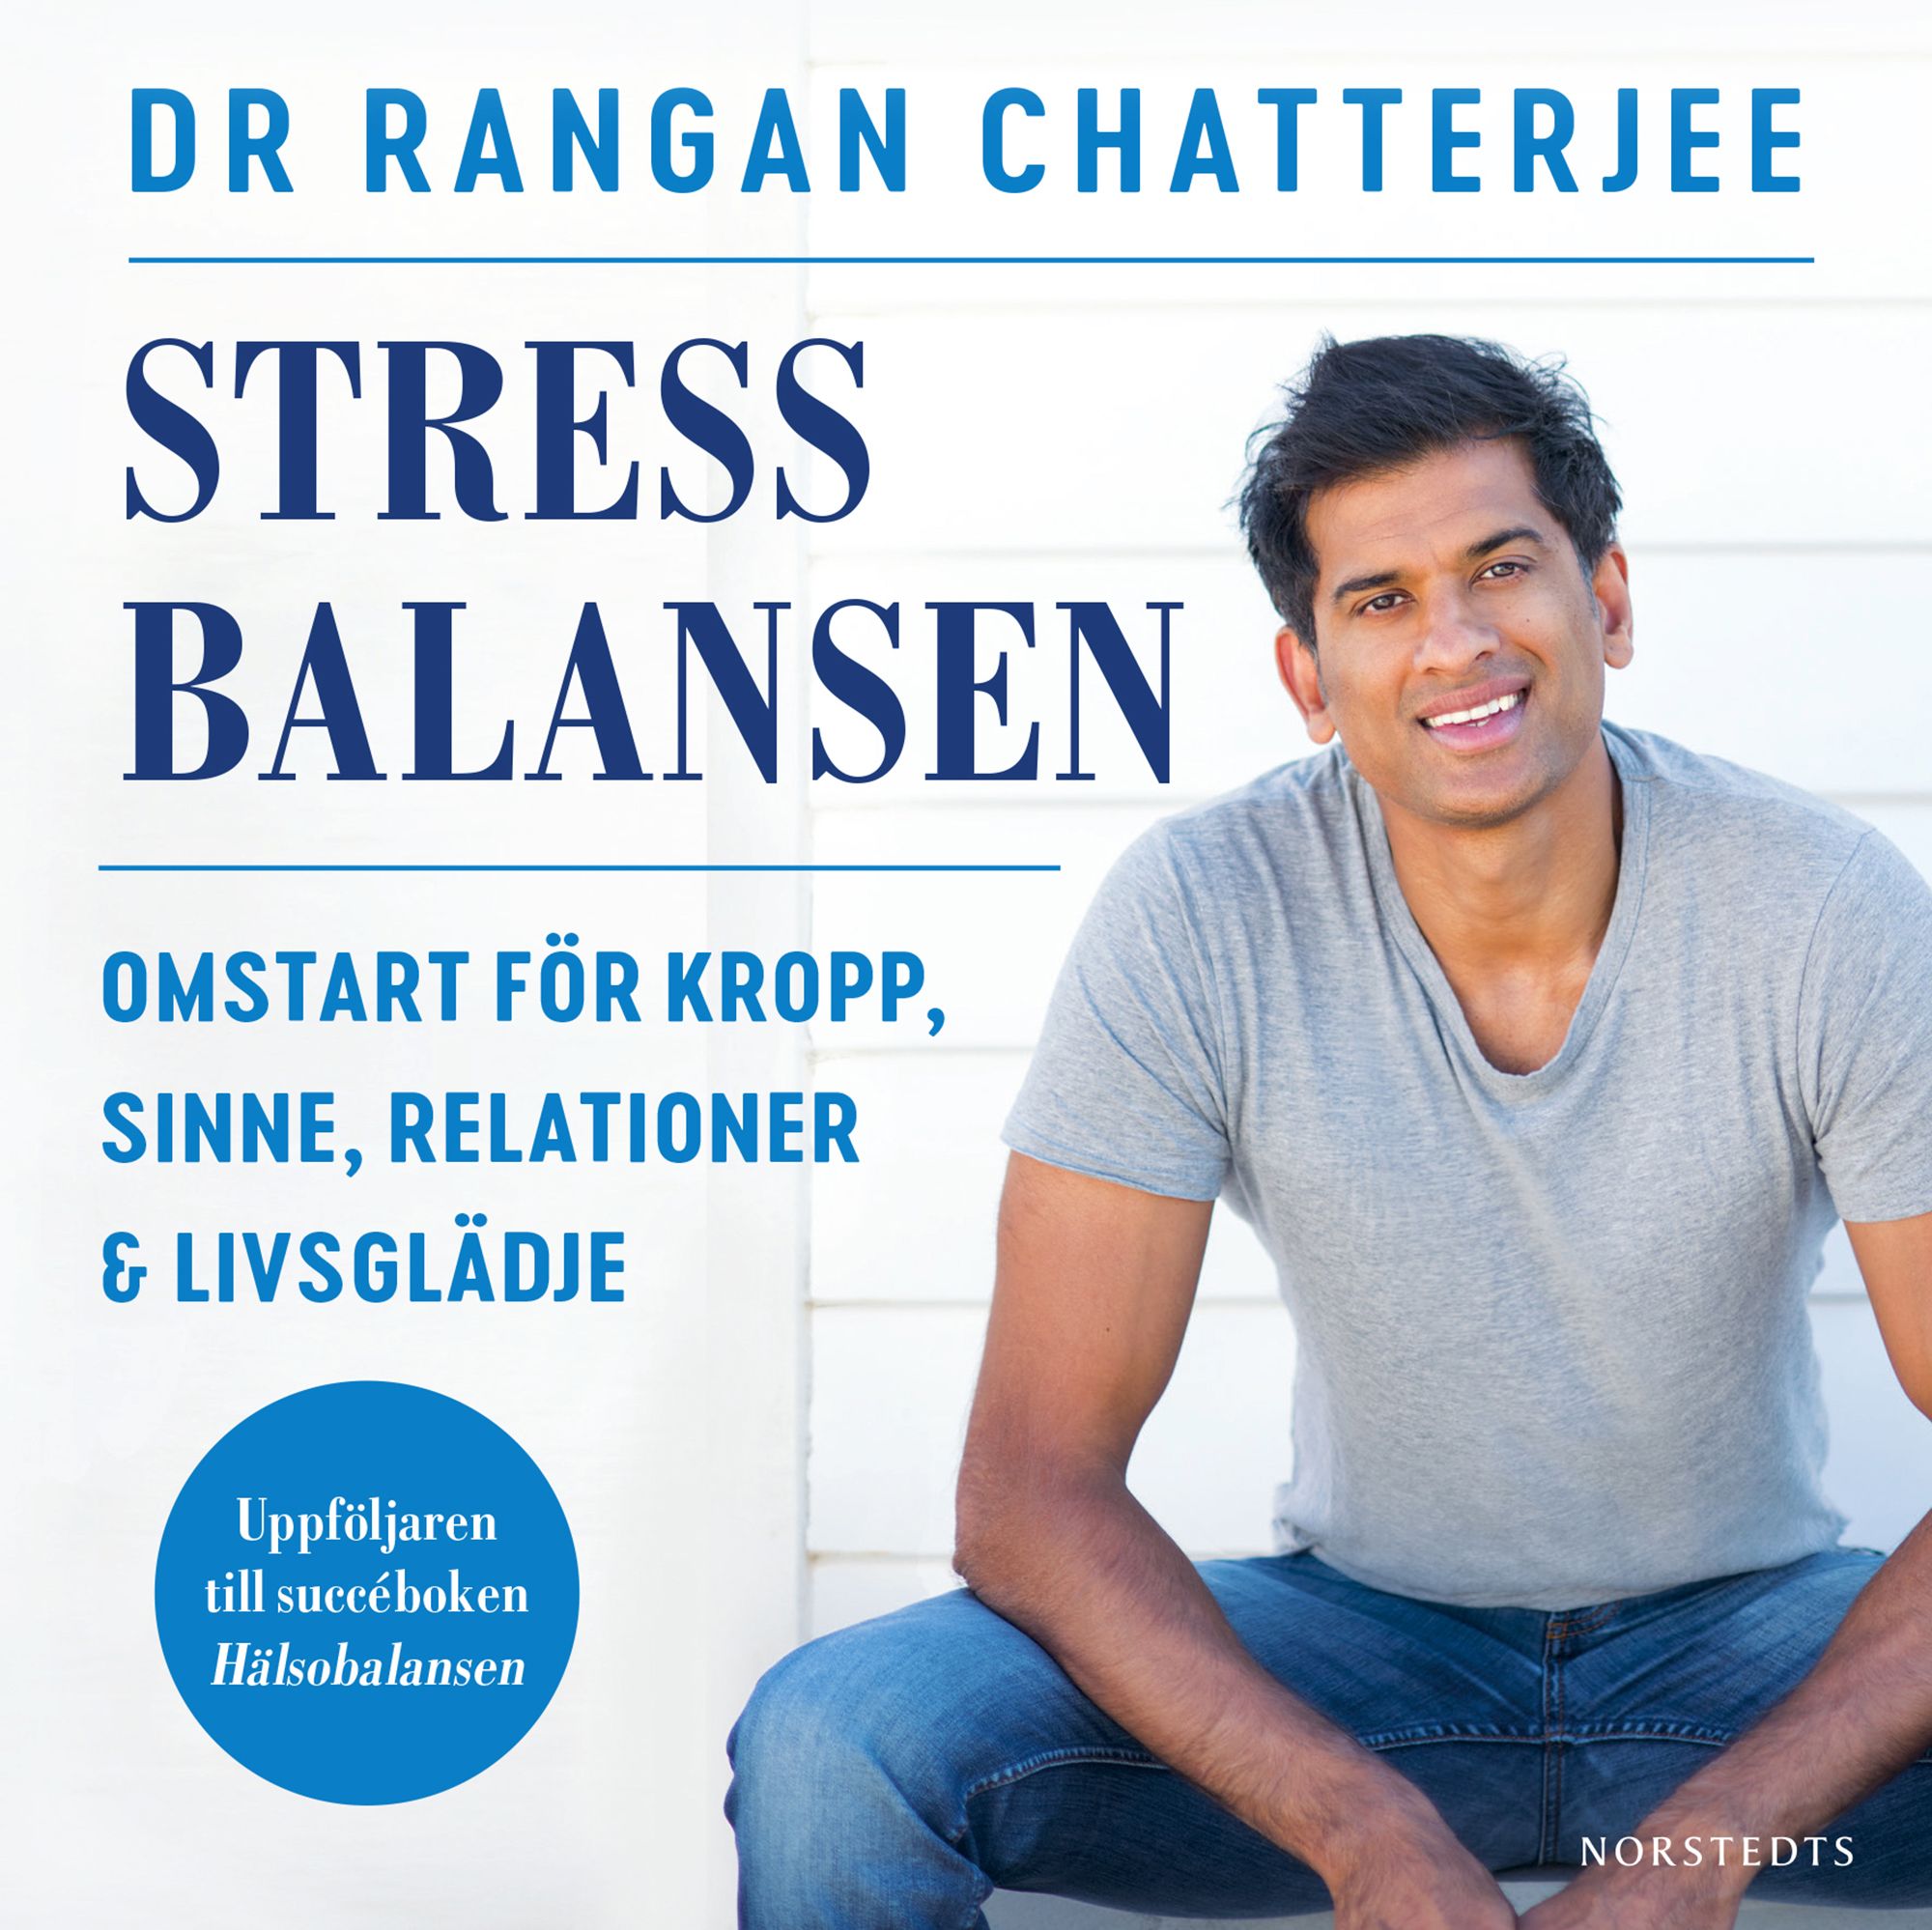 Stressbalansen : omstart för kropp, sinne, relationer & livsglädje, audiobook by Rangan Chatterjee